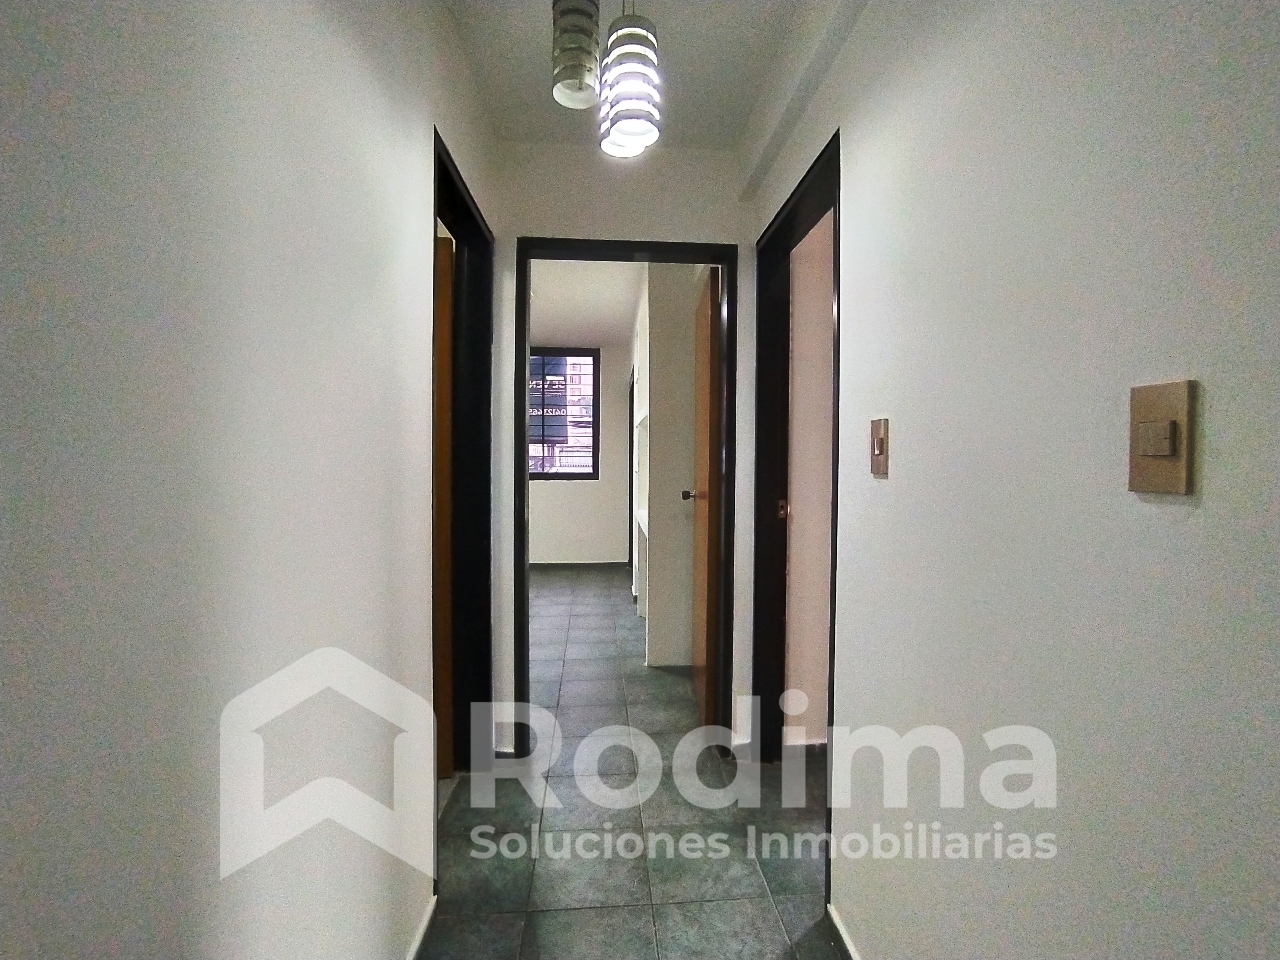 Apartamento en San Isidro, Residencias José María, primer piso y conectado a un pozo de agua